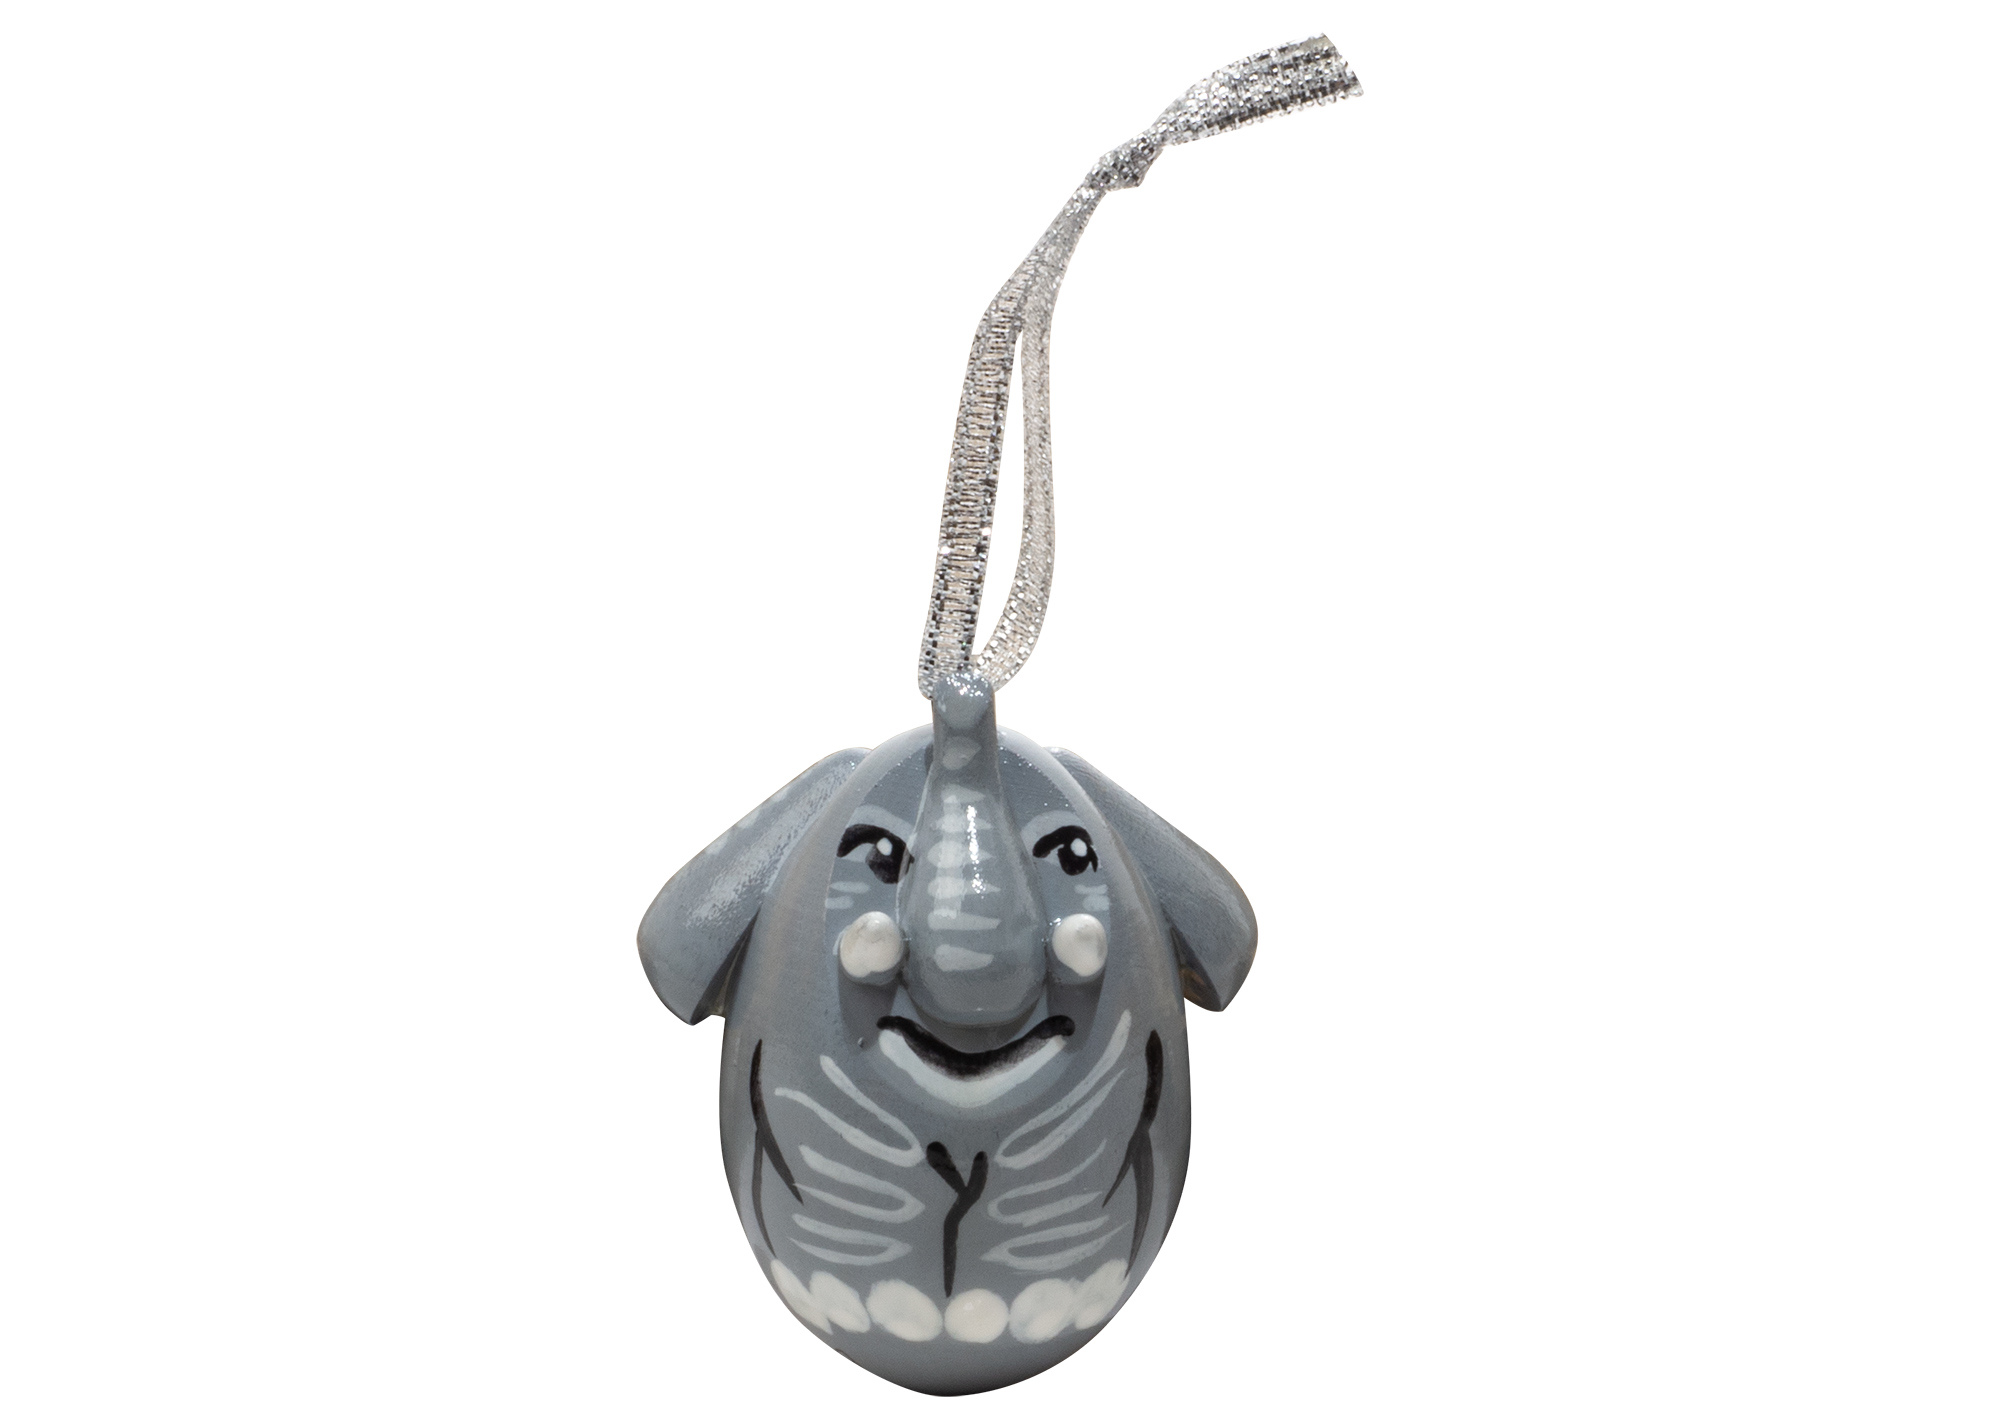 Buy Елочное украшение "Слон" 5 см at GoldenCockerel.com